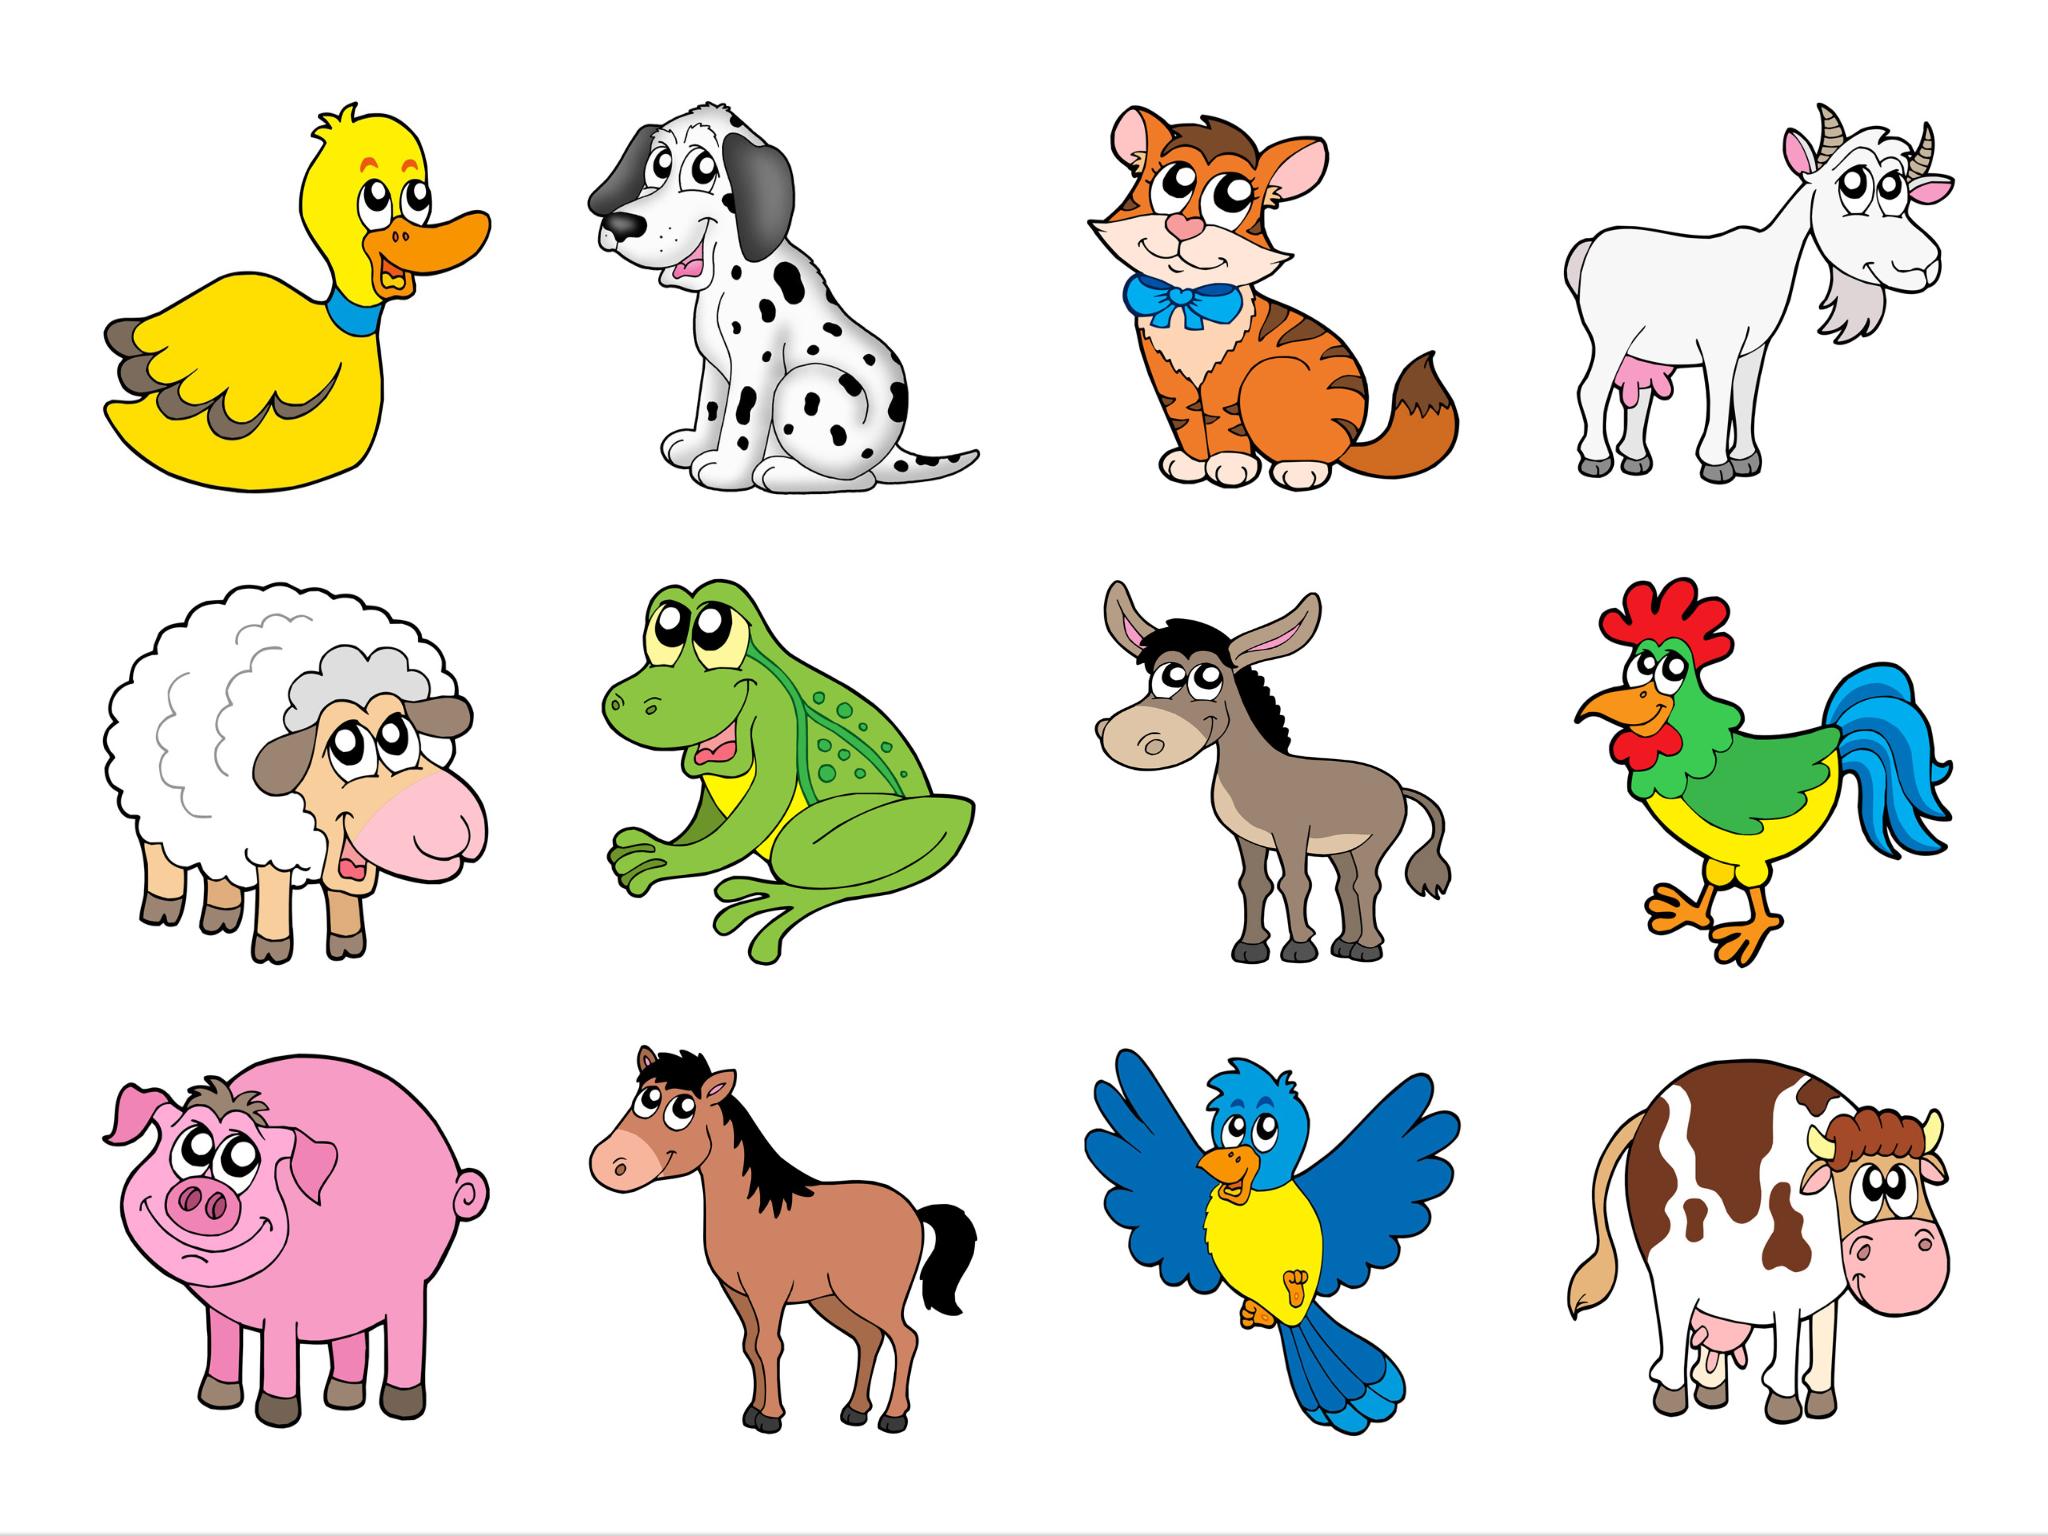 Name 5 pets. Изображения домашних животных для детей. Для детей. Животные. Мультяшные животные. Иллюстрации животных для детей.